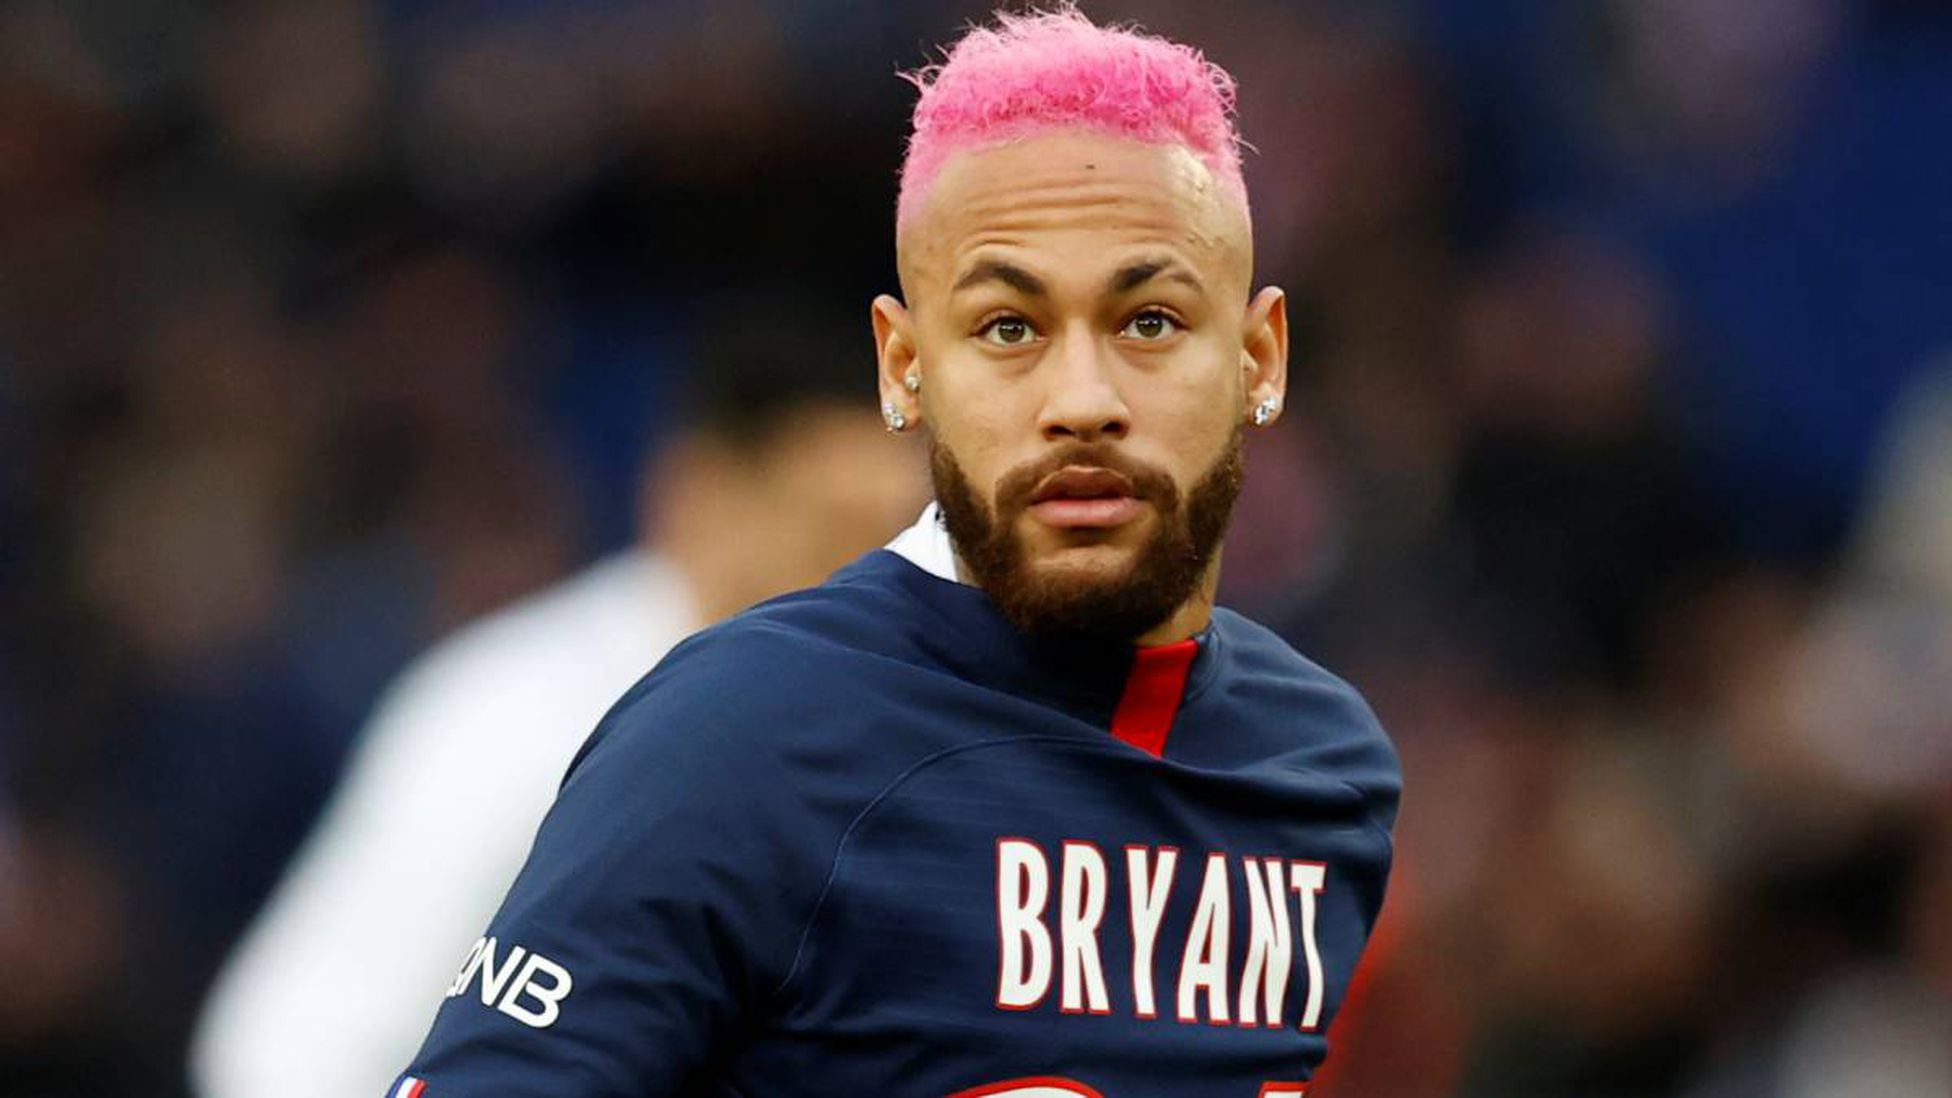 Neymar y su 'nuevo look' rosa chillón - AS.com